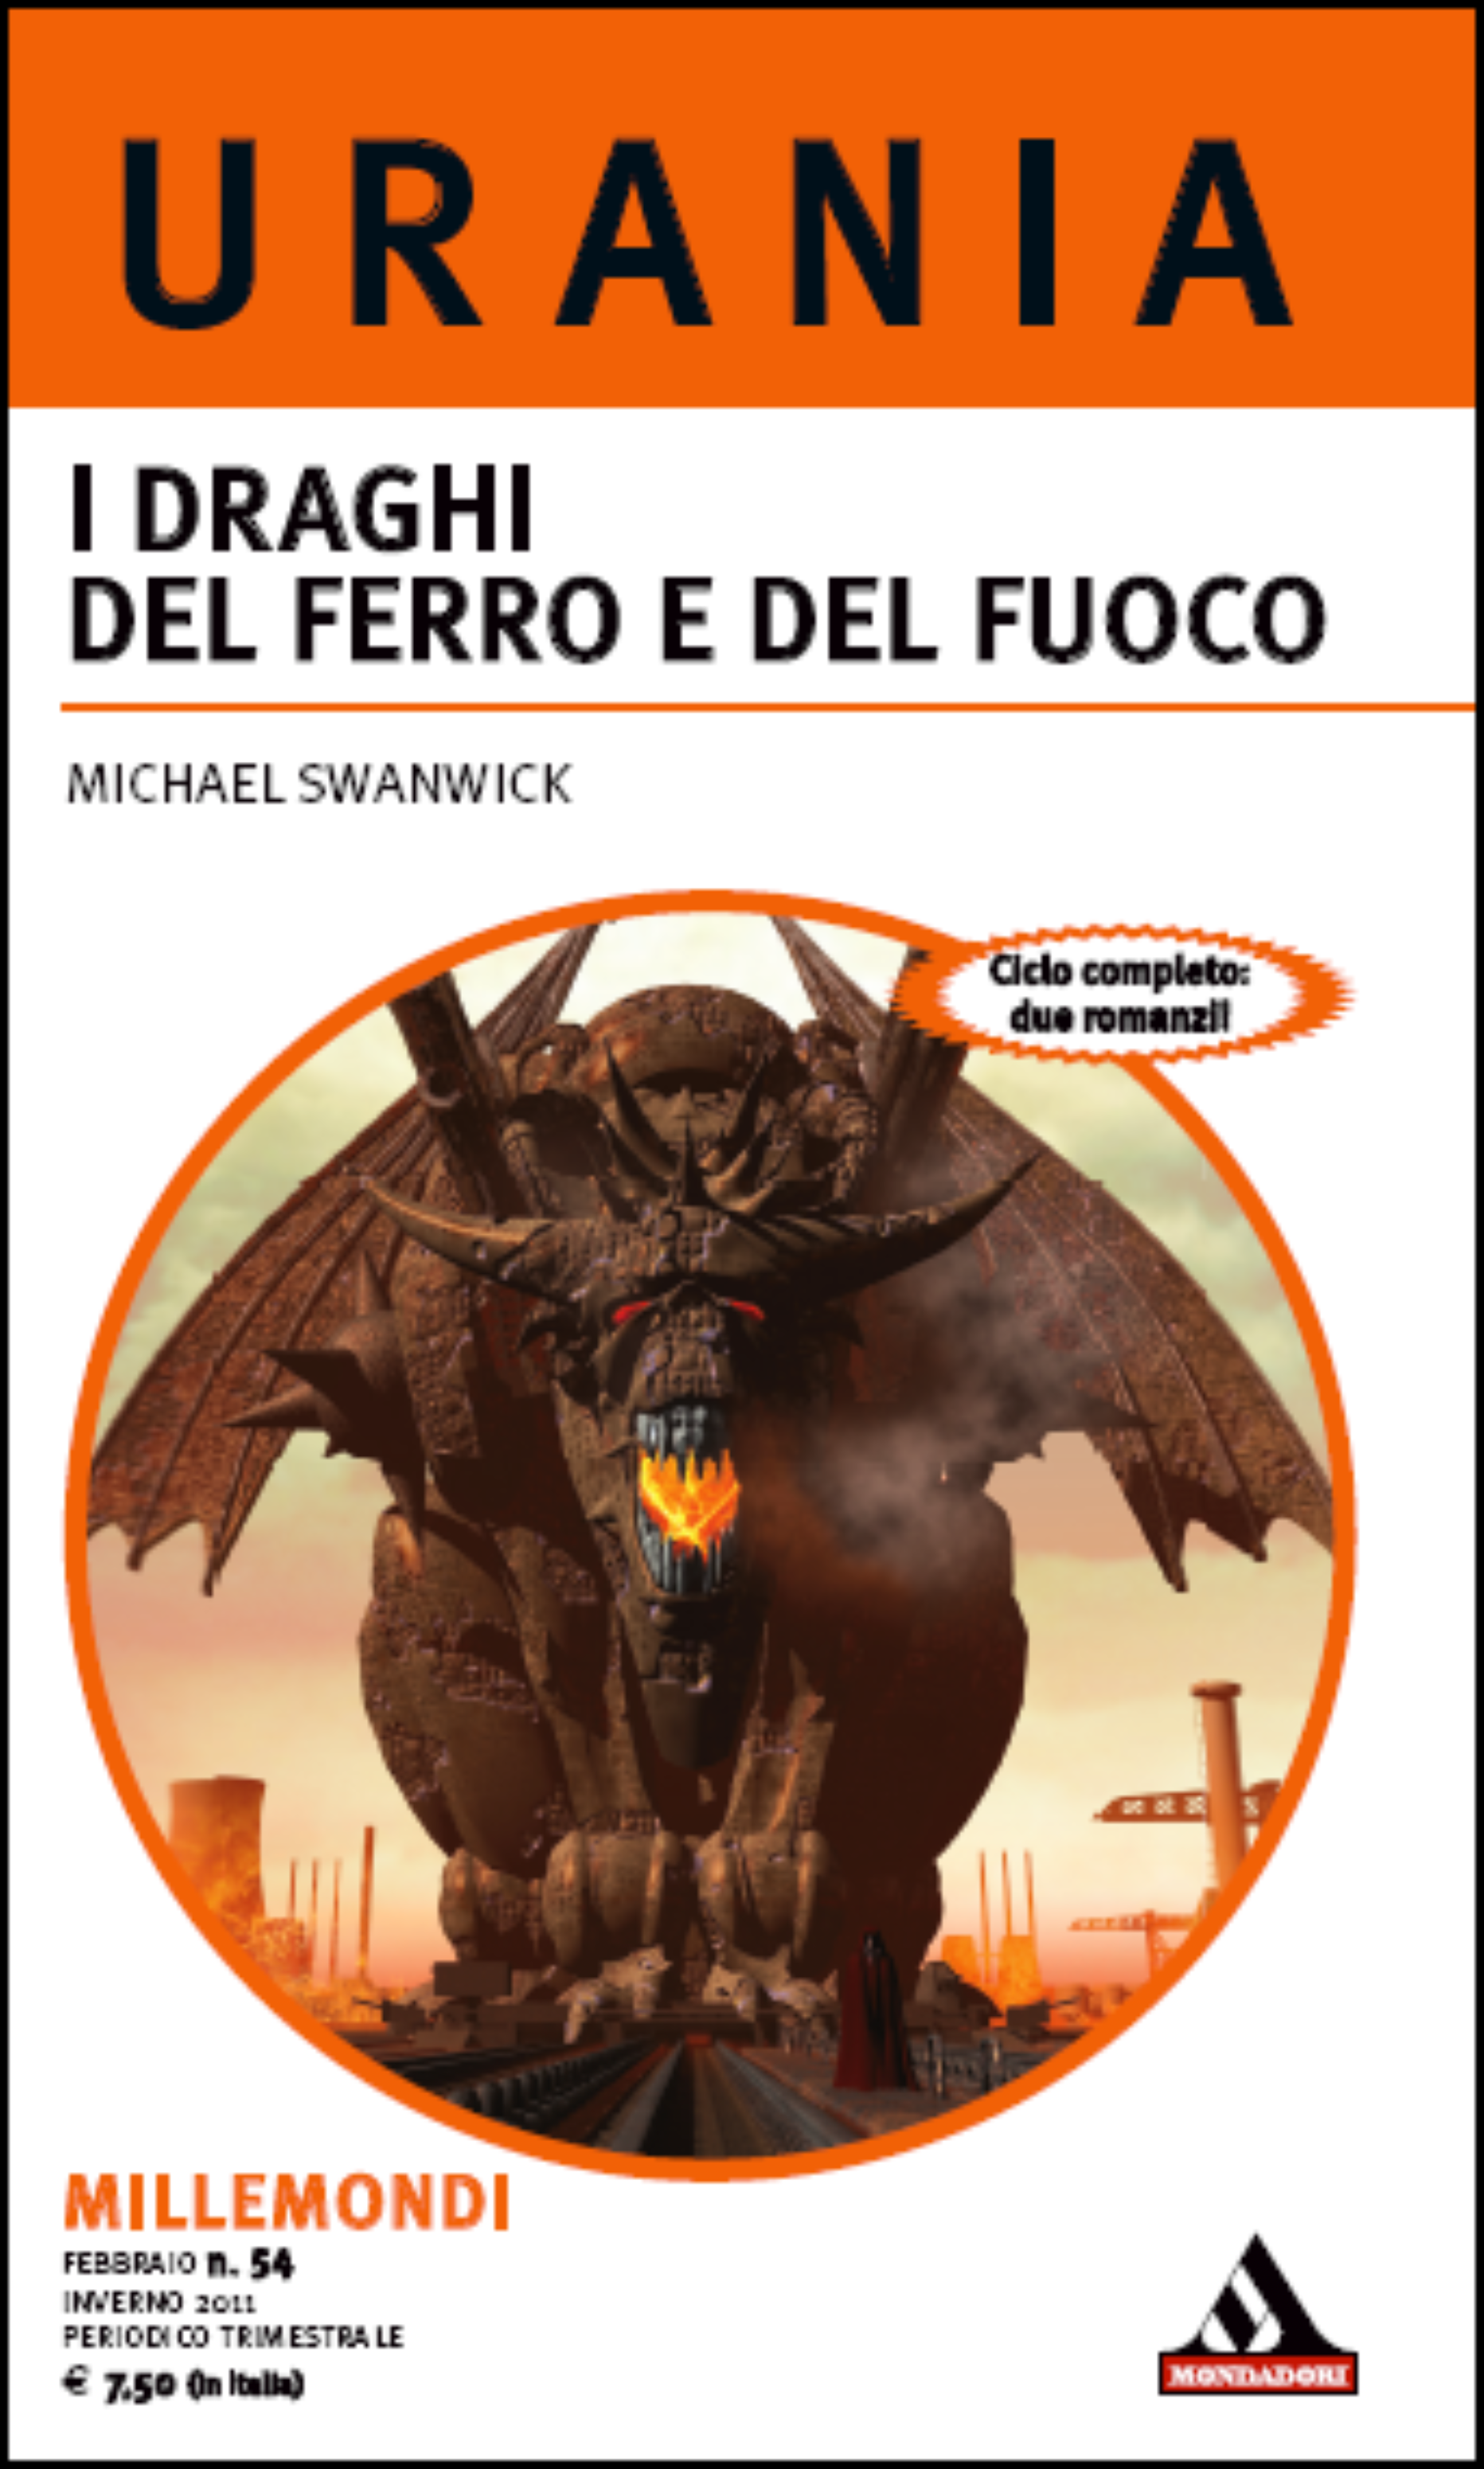 Michael Swanwick – I draghi del ferro e del fuoco